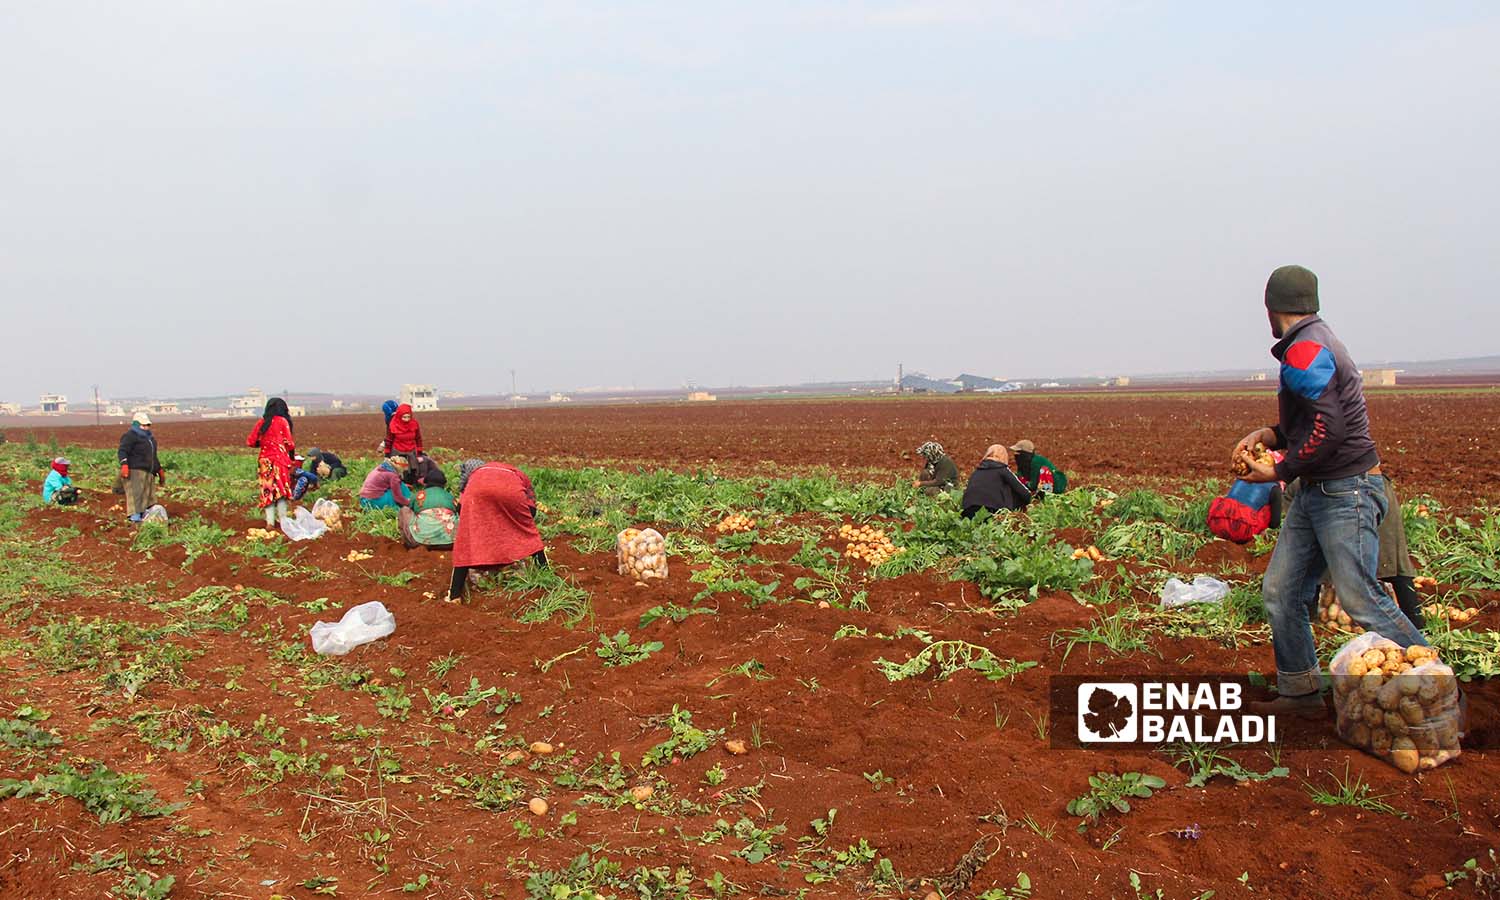 عمال يقلعون البطاطا في بلدة زردنا بريف ادلب - 26 من كانون الأول 2022 (عنب بلدي/ إياد عبد الجواد)
